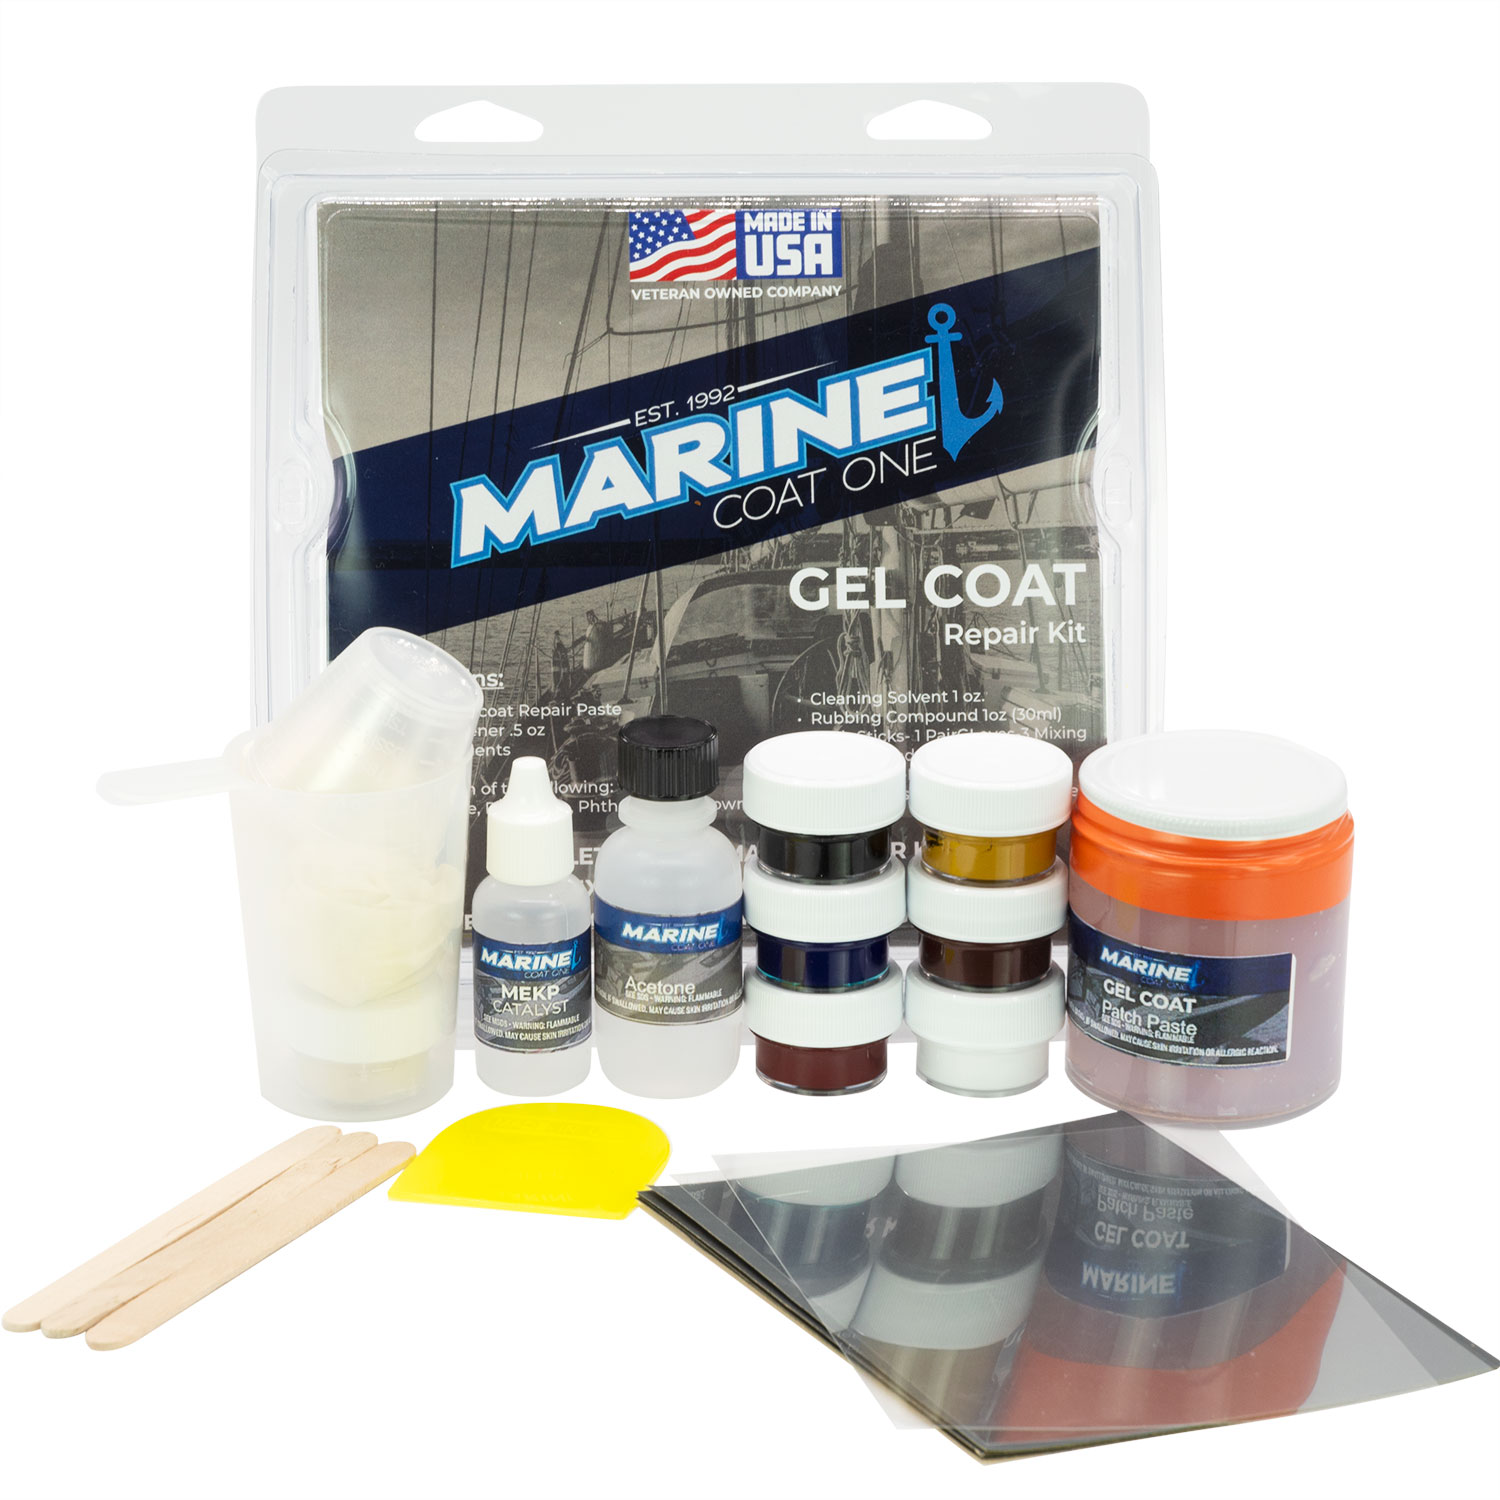 Fiberglass Repair Kit - is it worth it? A look at the Evercoat Marine Kit 